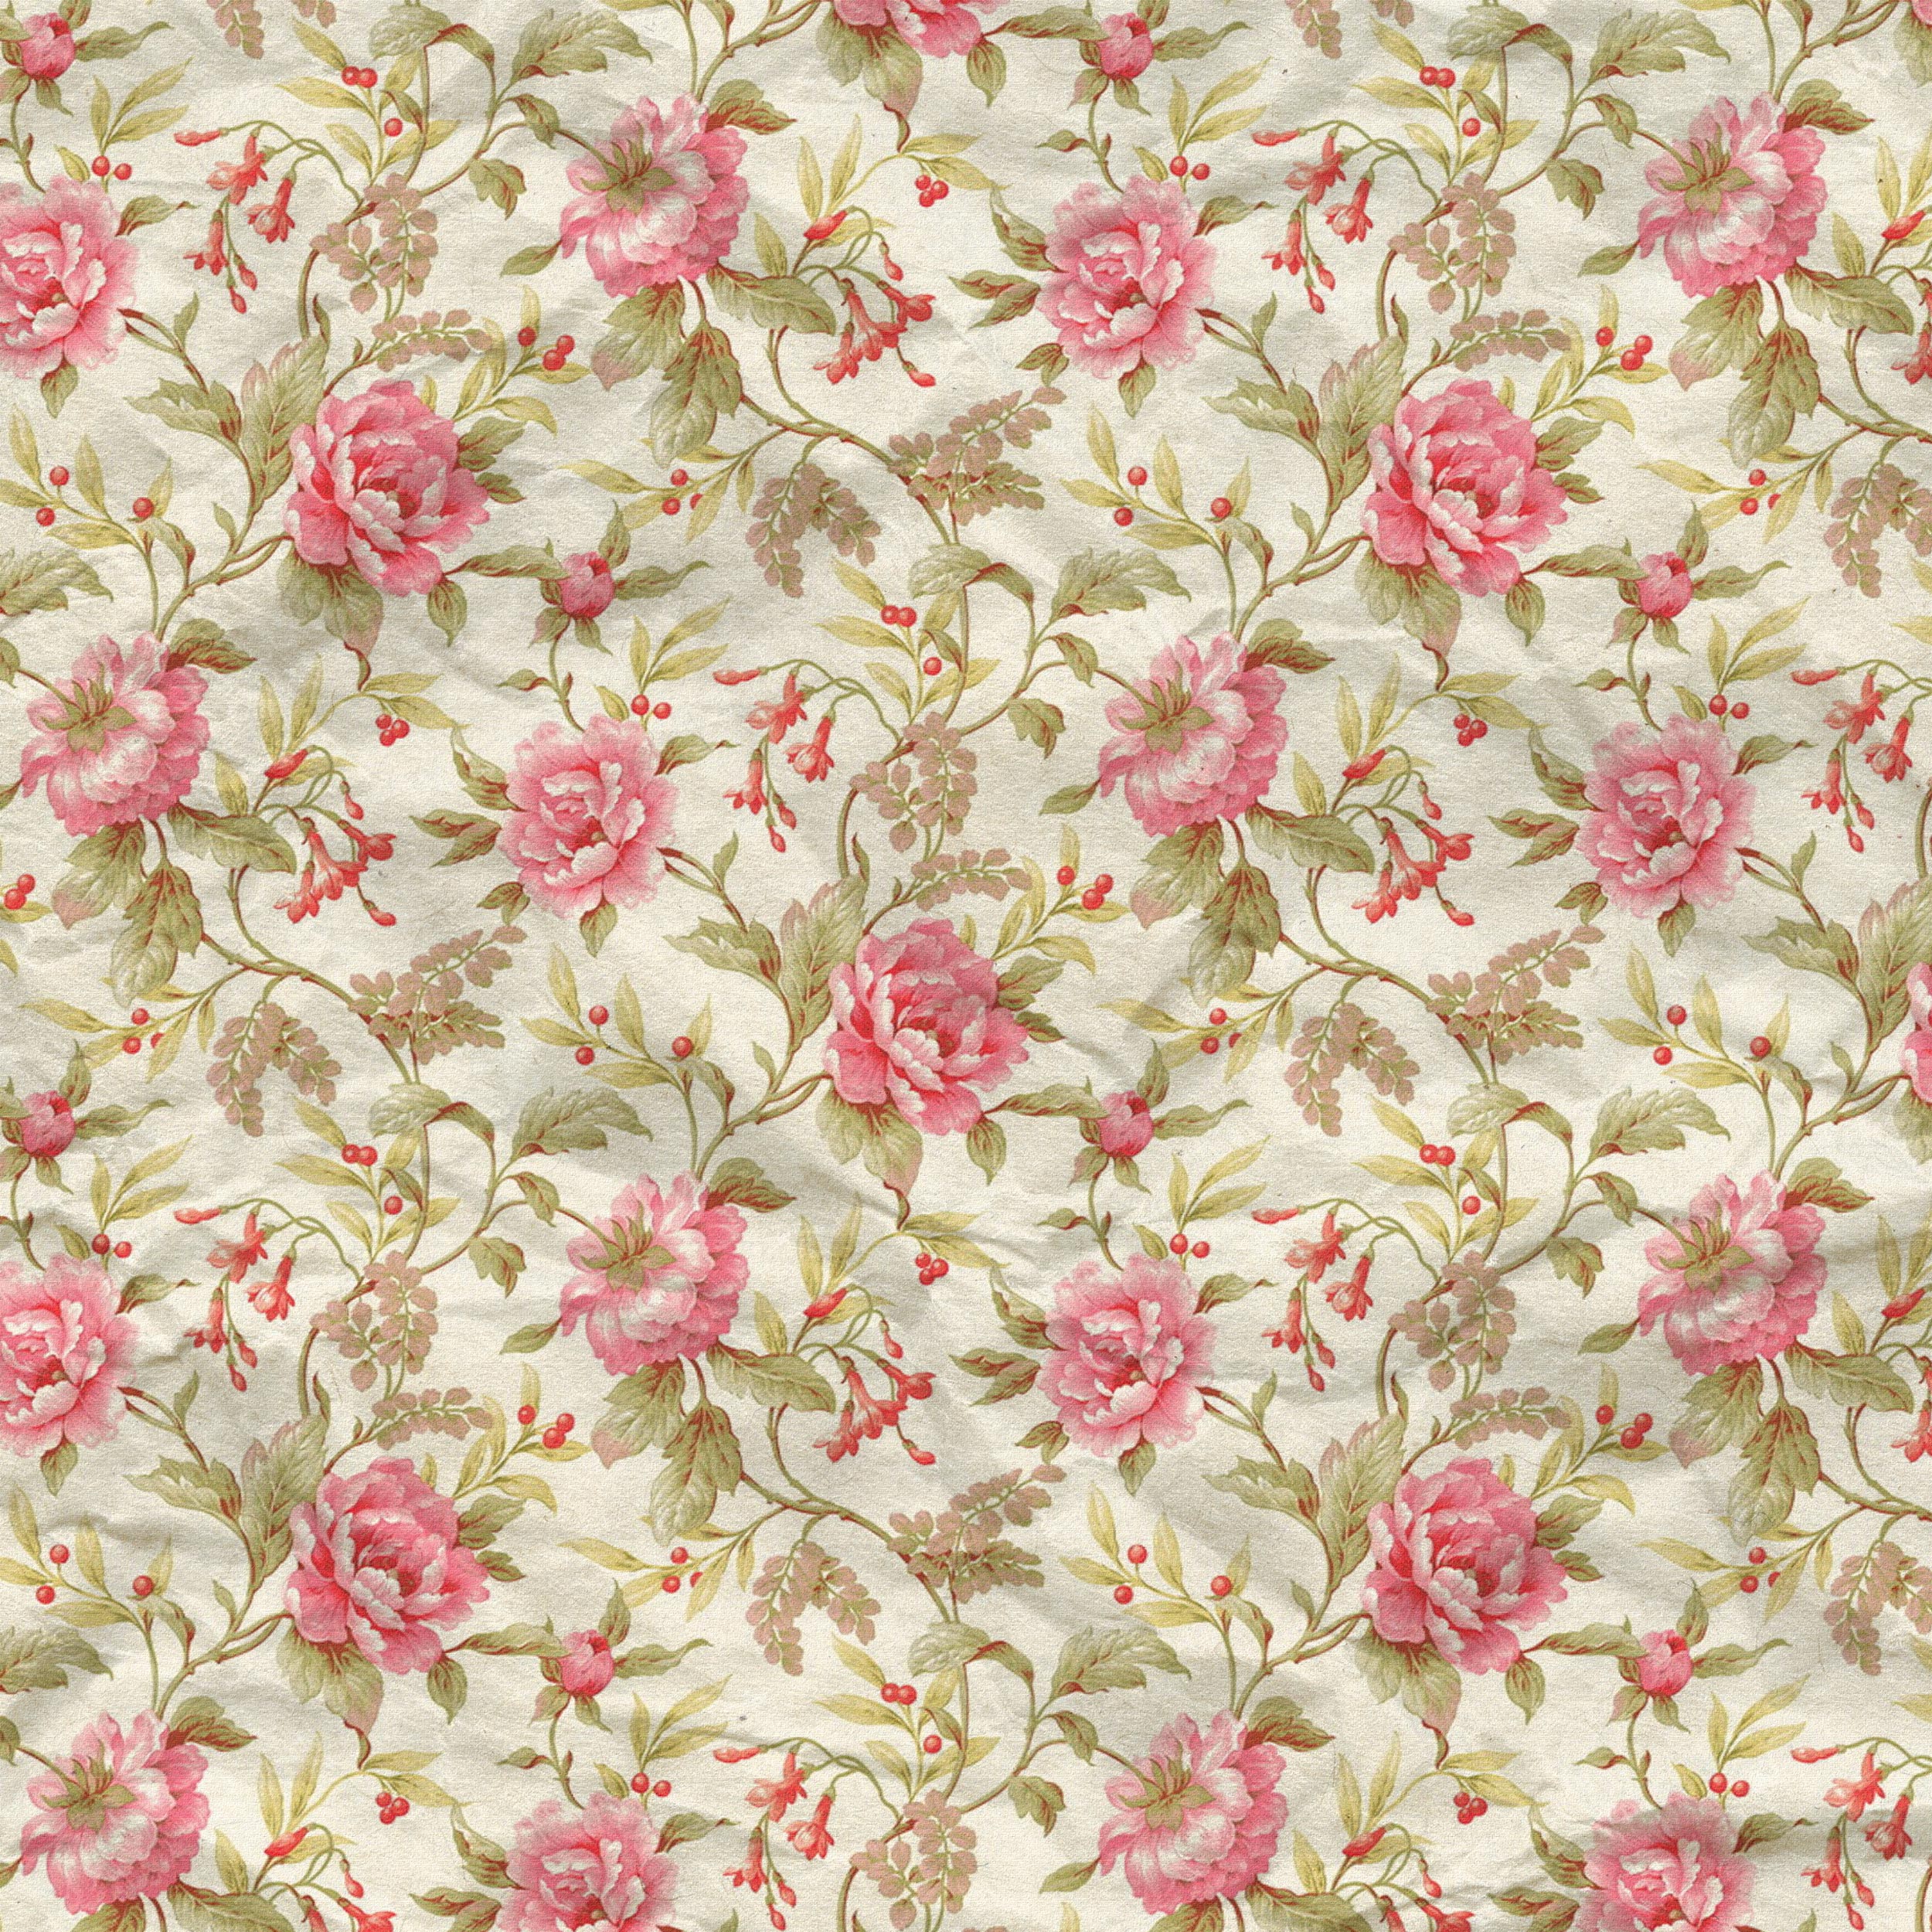 壁紙 背景イラスト 花の模様 柄 パターン No 185 ピンク 緑葉 布生地